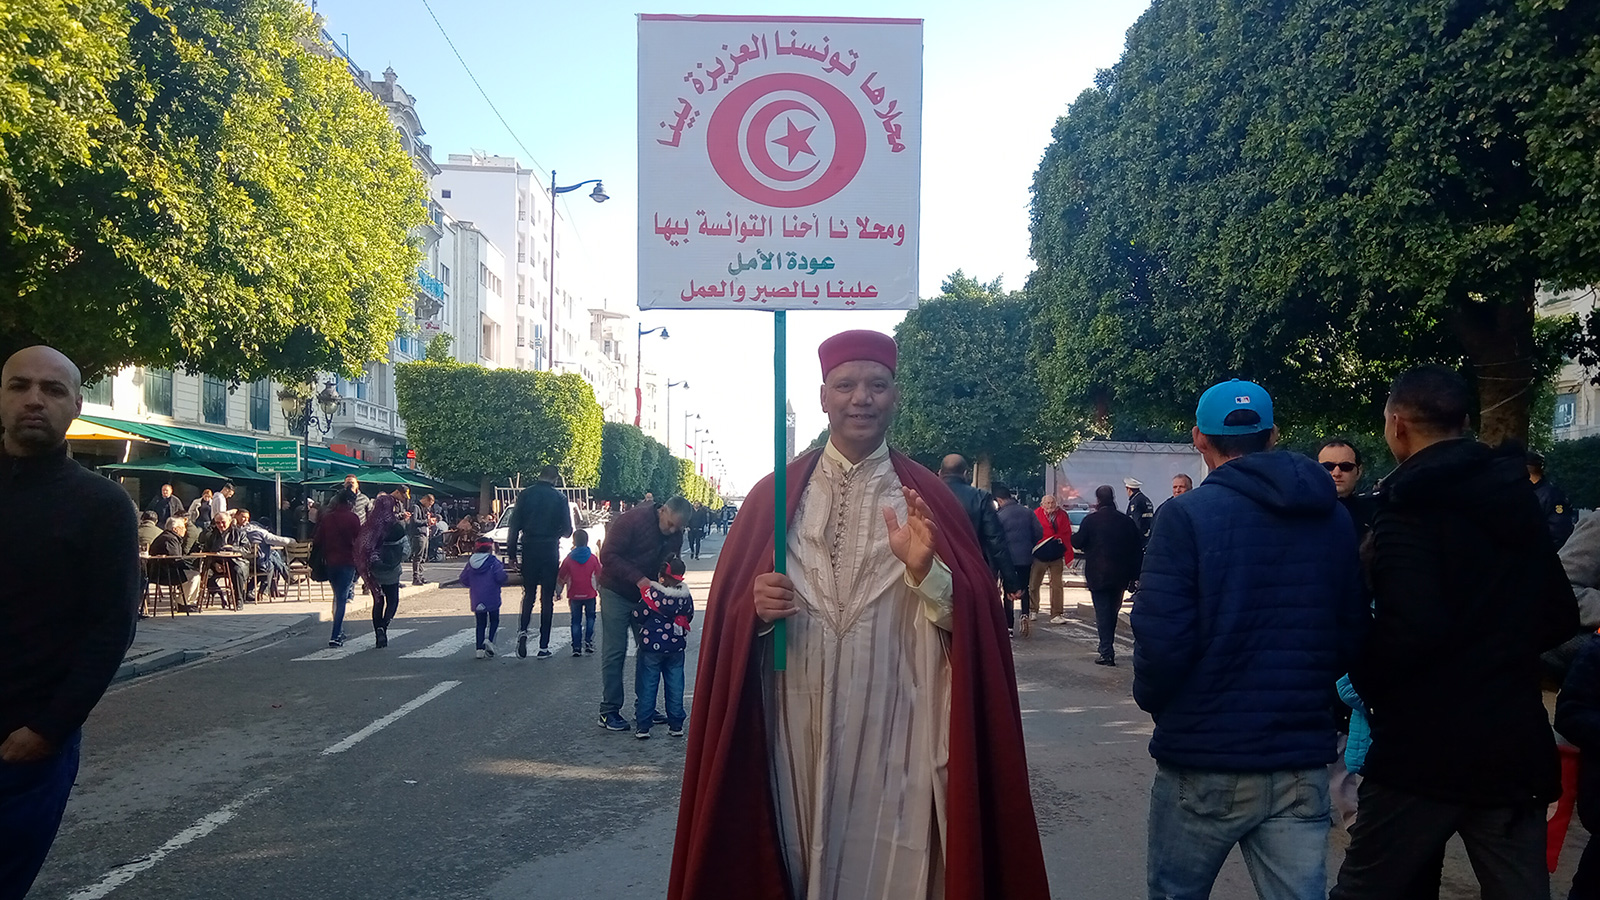 ‪محمد علي الدريدي: الثورة التونسية تعدّ الأنجح في المنطقة العربية رغم أن مسارها الانتقالي لم يكتمل‬  (الجزيرة)